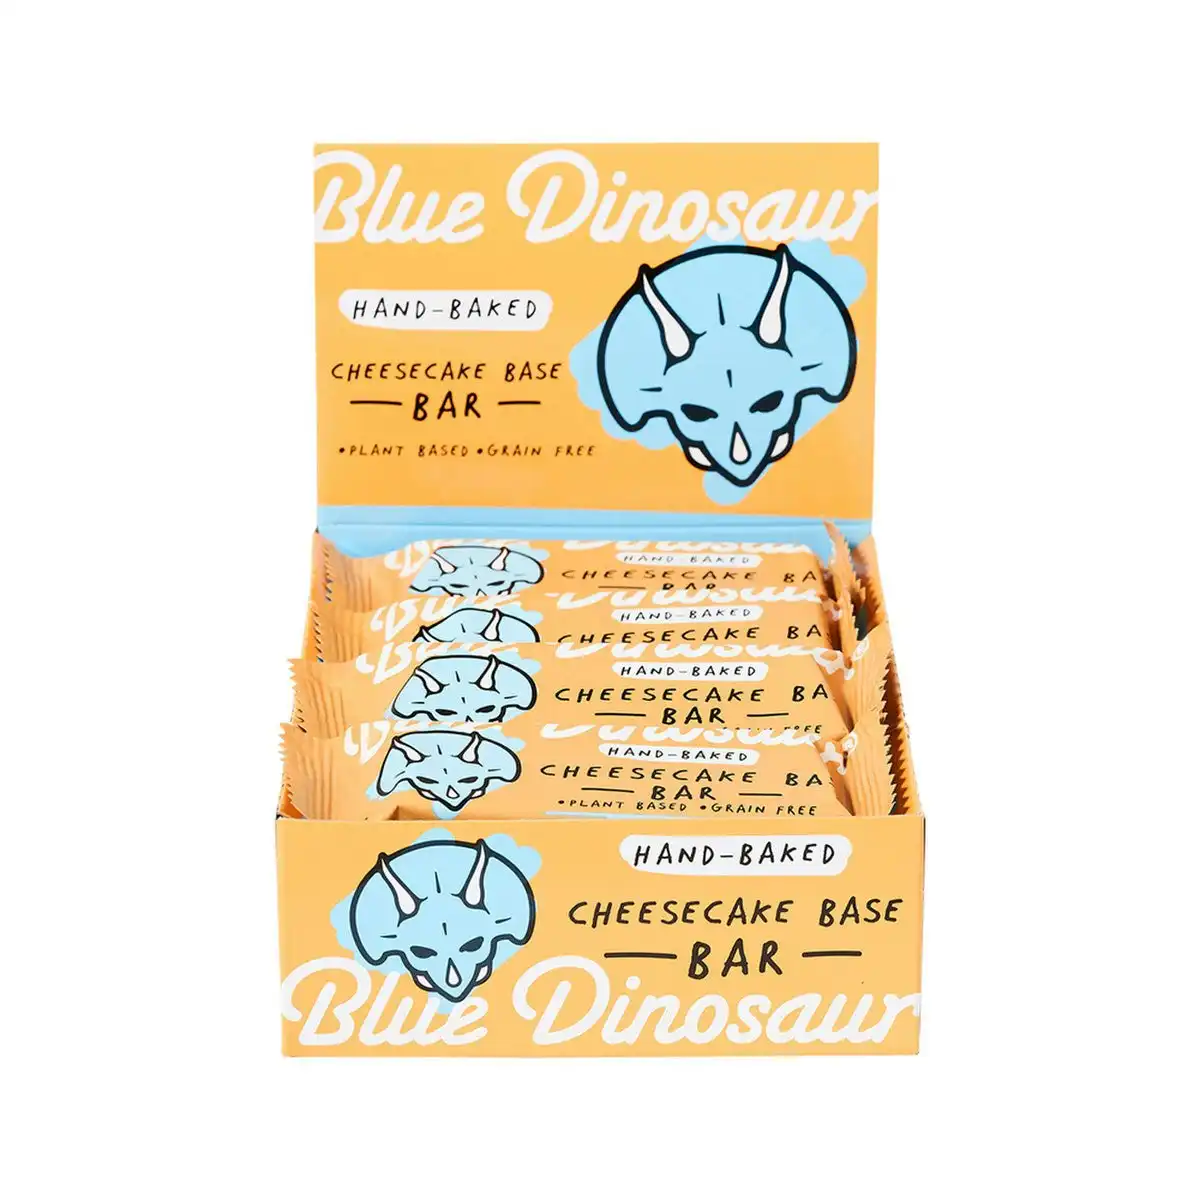 Blue Dinosaur Hand-Baked Bar Cheesecake Base 45g 12PK